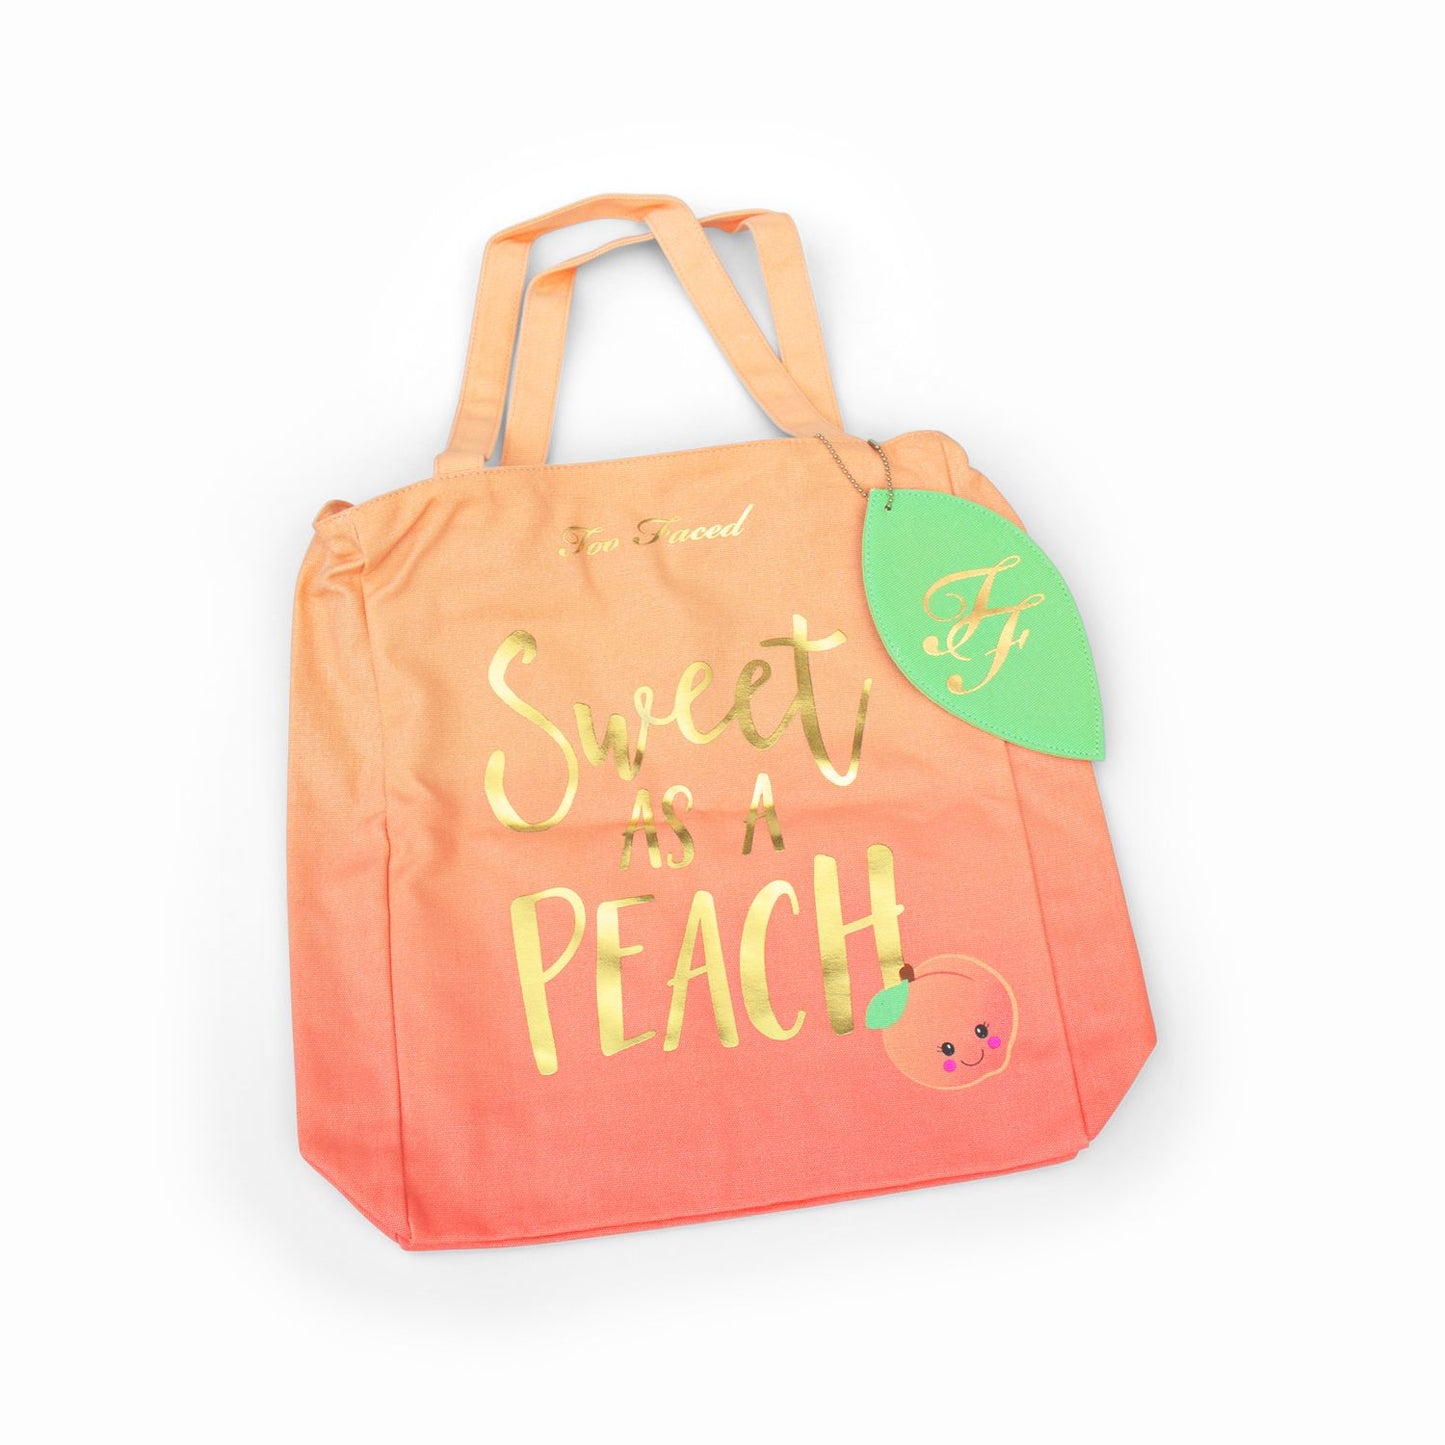 Too Faced Peach Sweet As A Peach Tote Bag - Missing Box